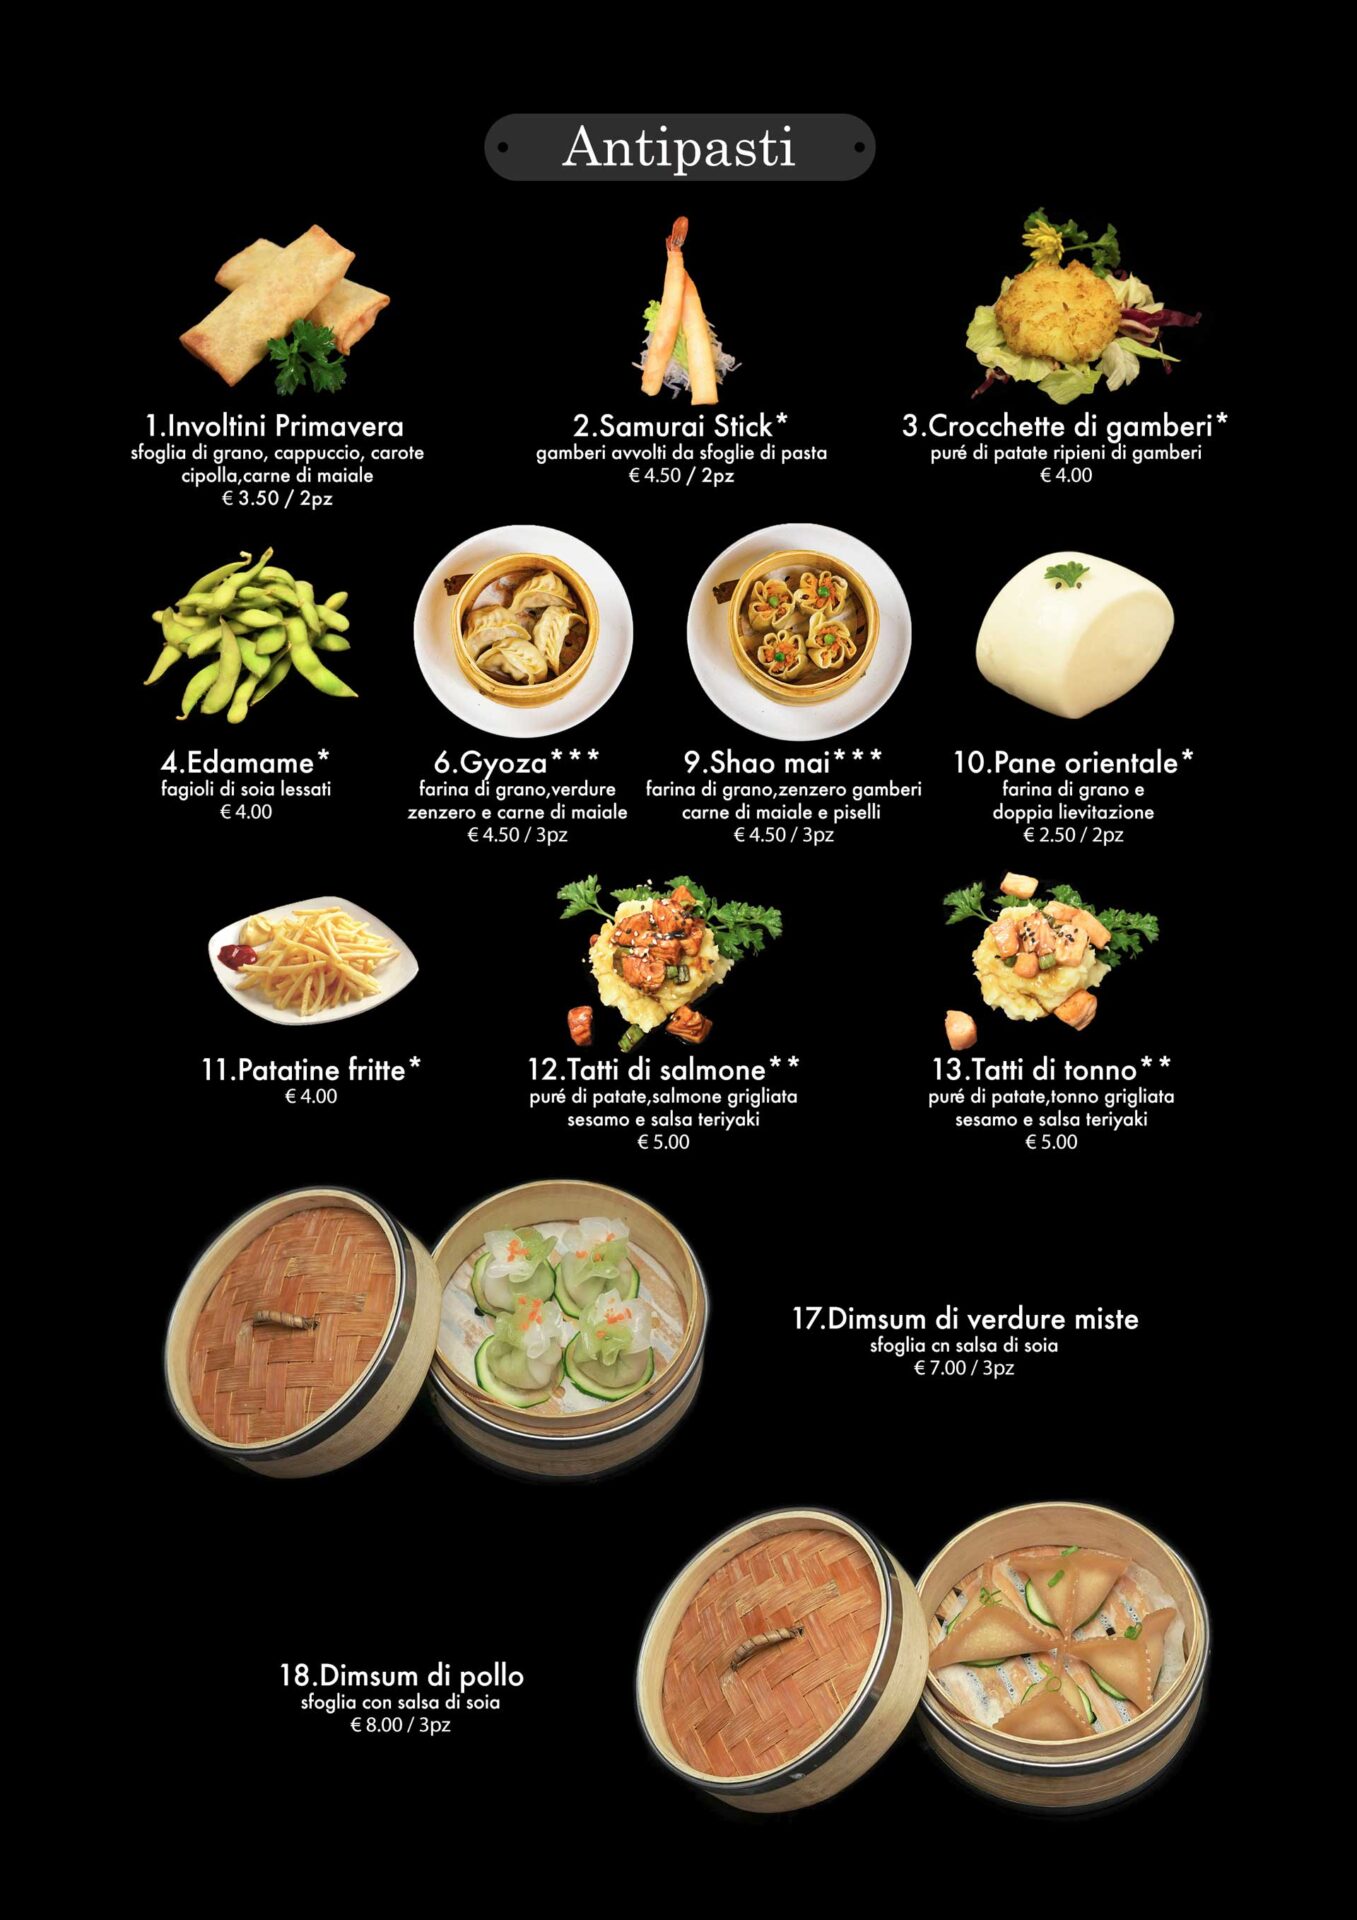 pagina 02 menù antipasti pranzo attimi ristorante giapponese padova